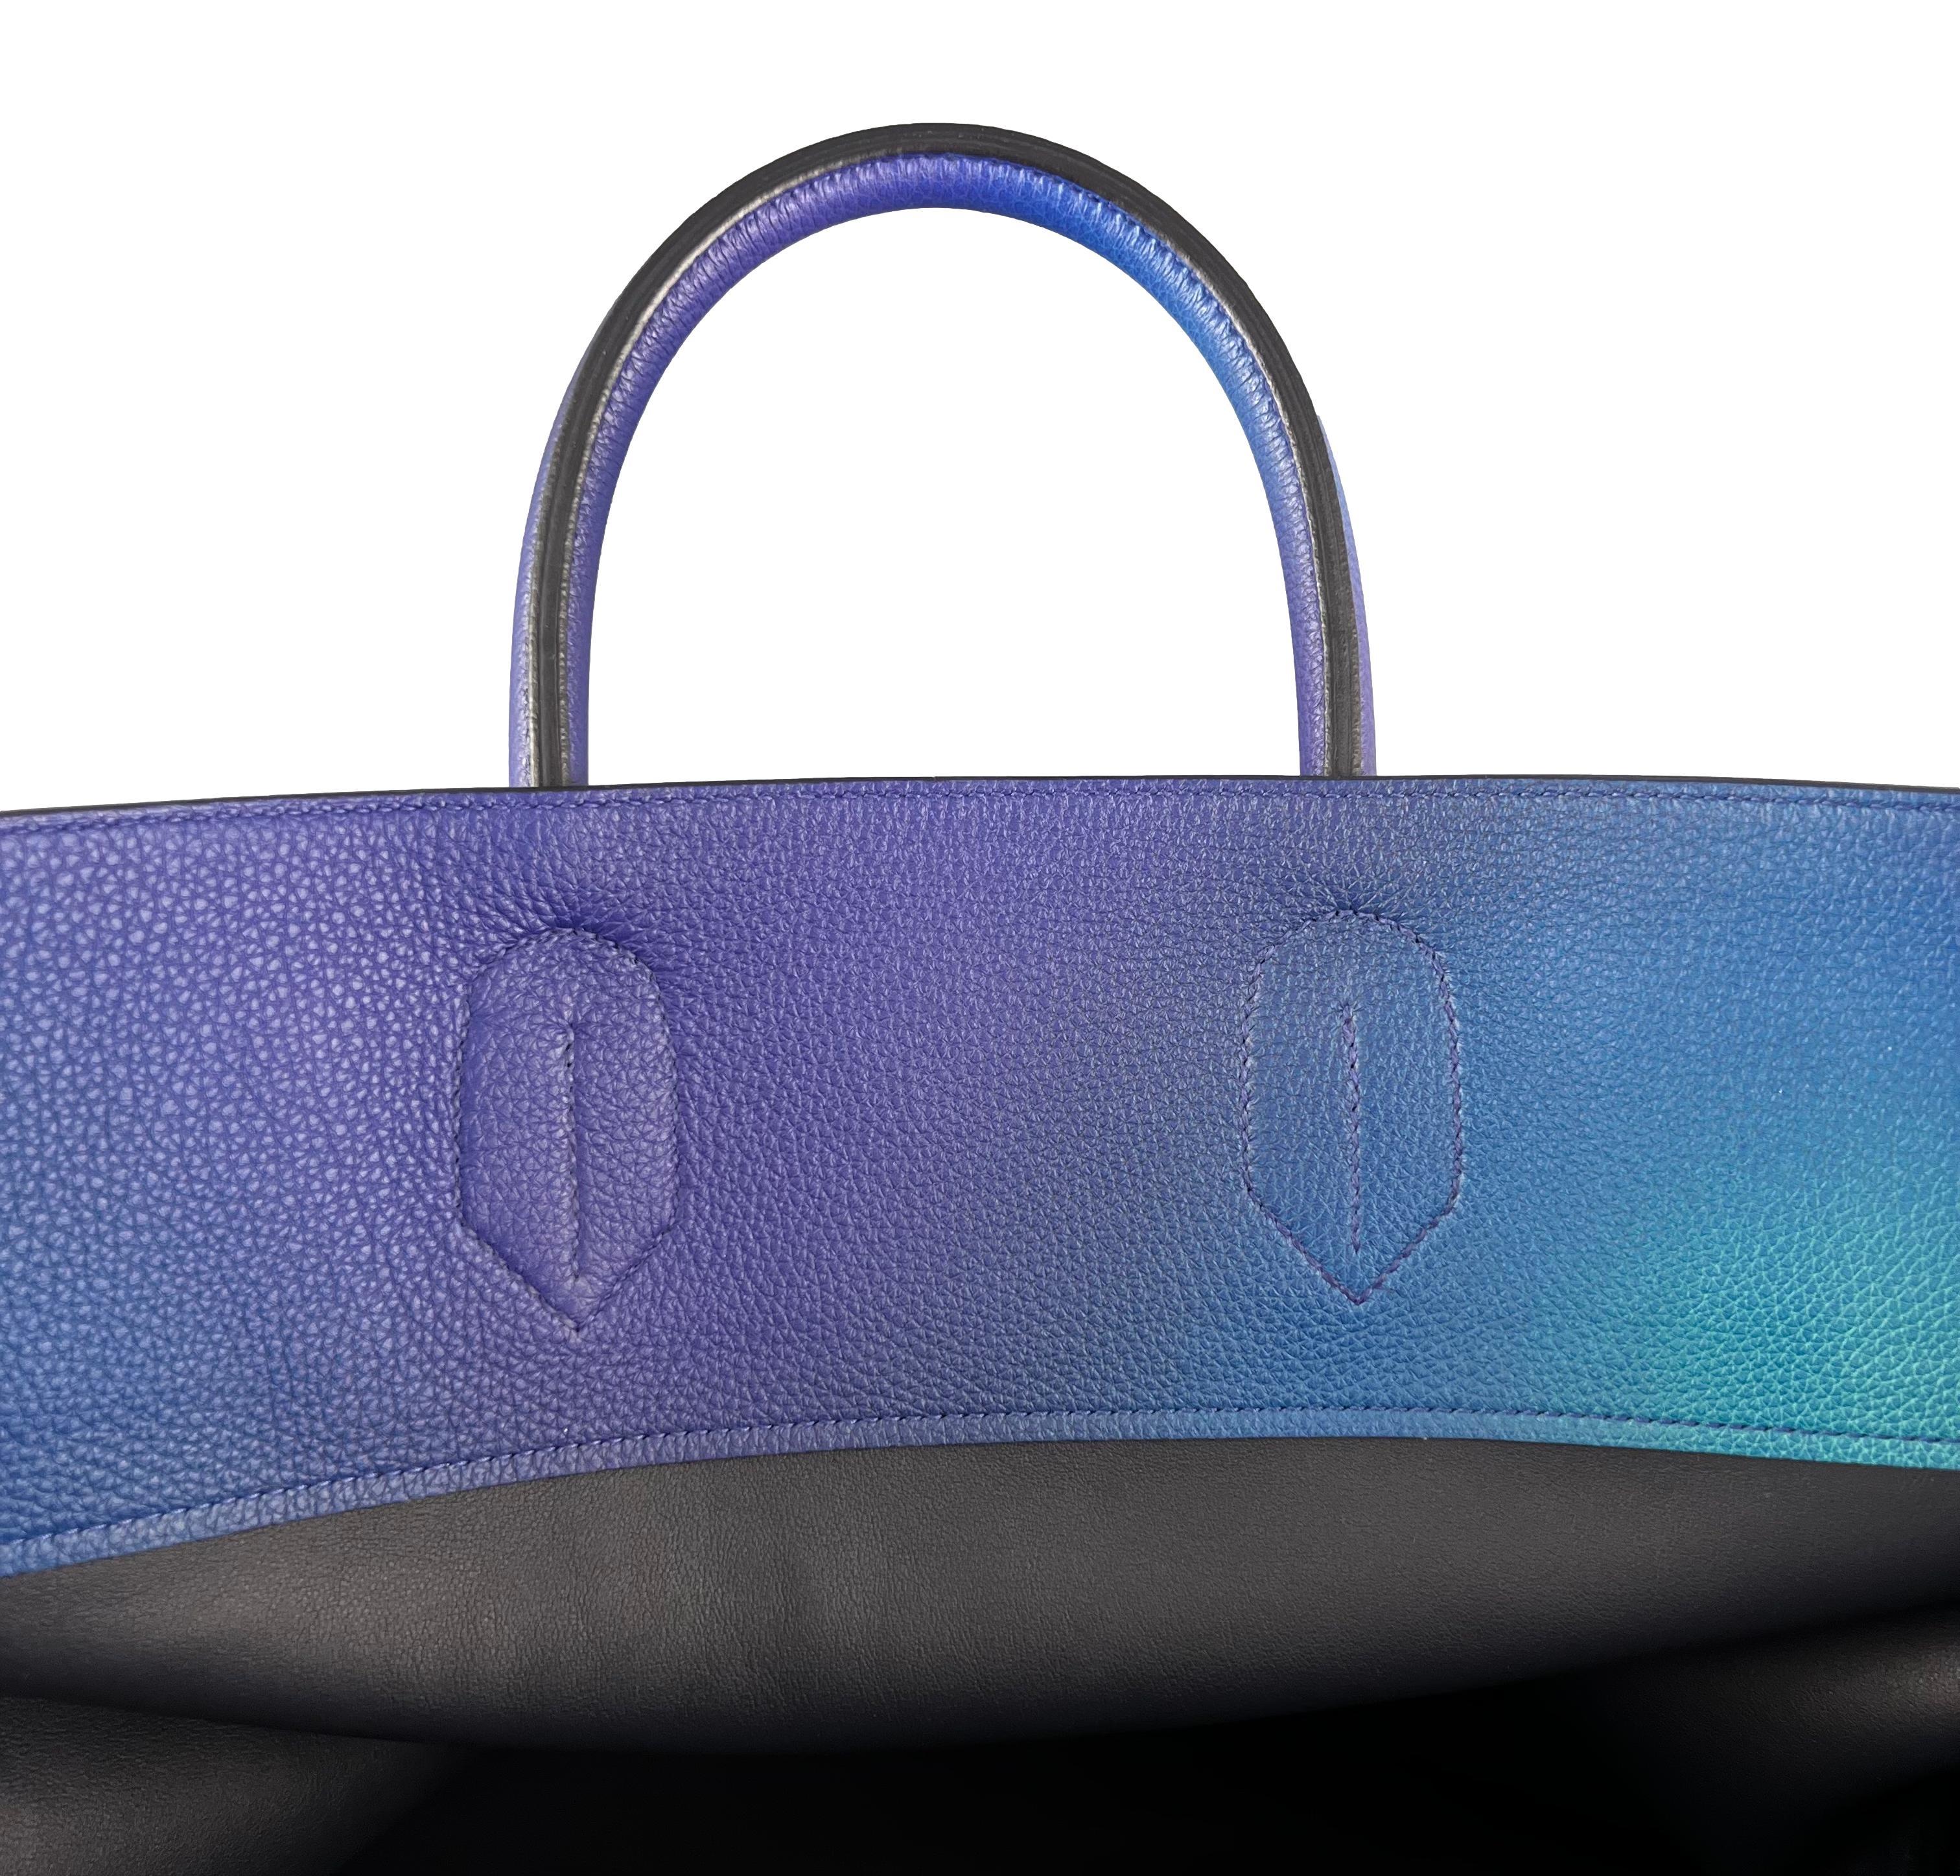 Hermès SS19 Ombré Haut à Courroies Cosmos HAC 50 Nuit Violet Limited Edition Bag 5